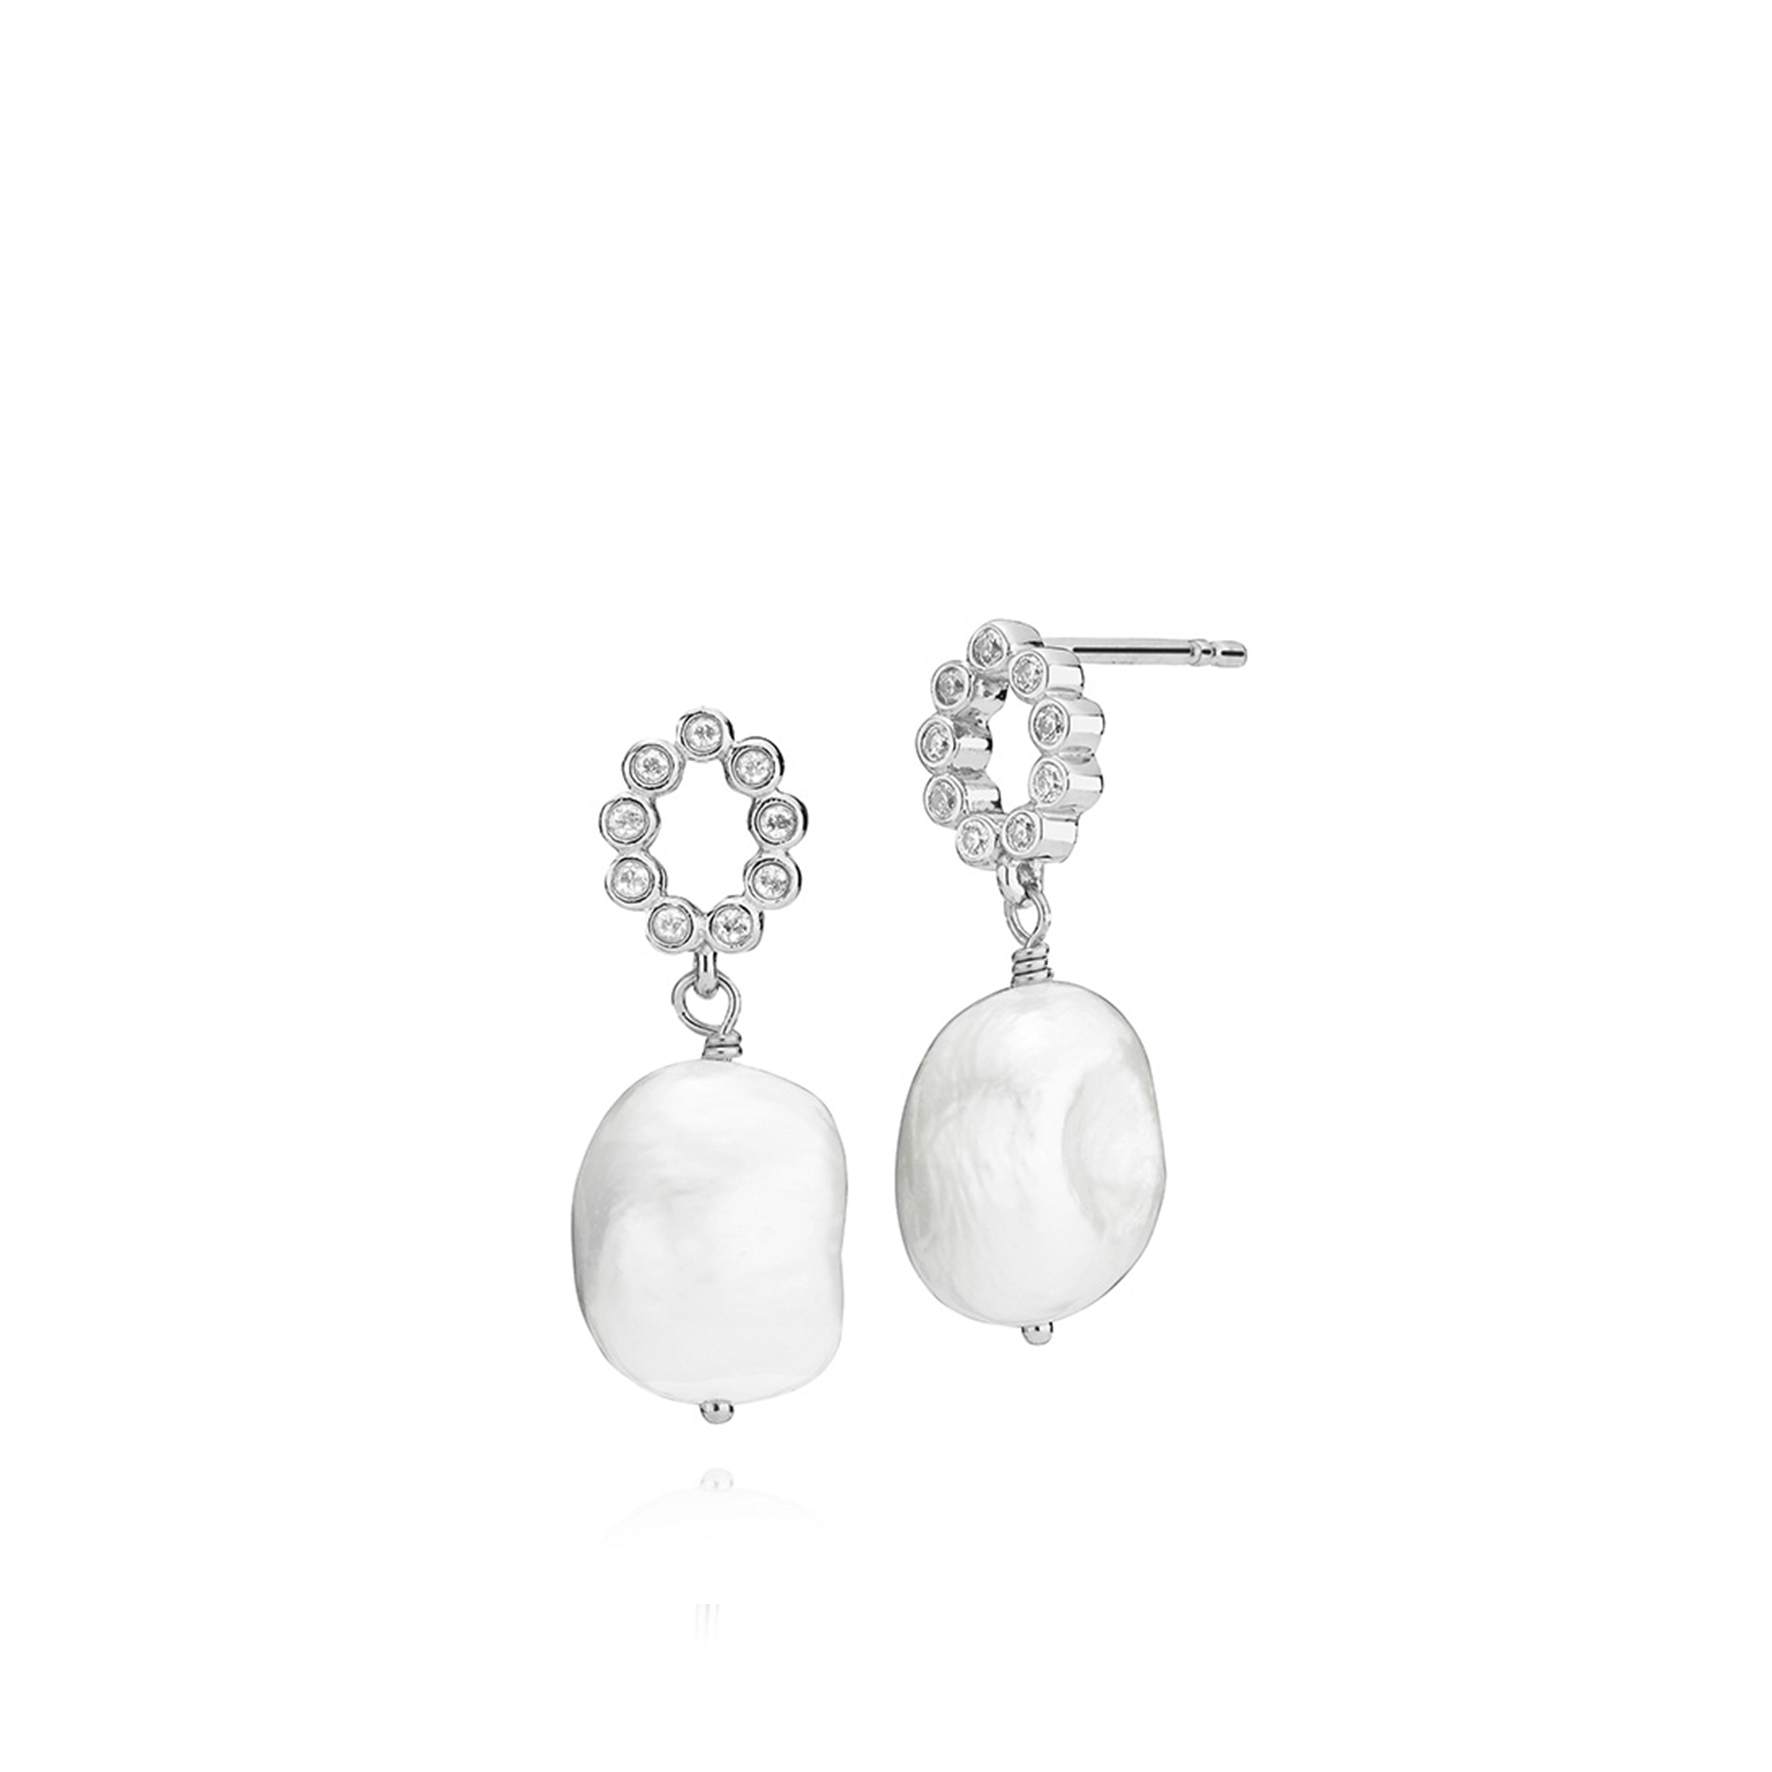 Leonora Earrings With Freshwater Pearls fra Izabel Camille i Sølv Sterling 925